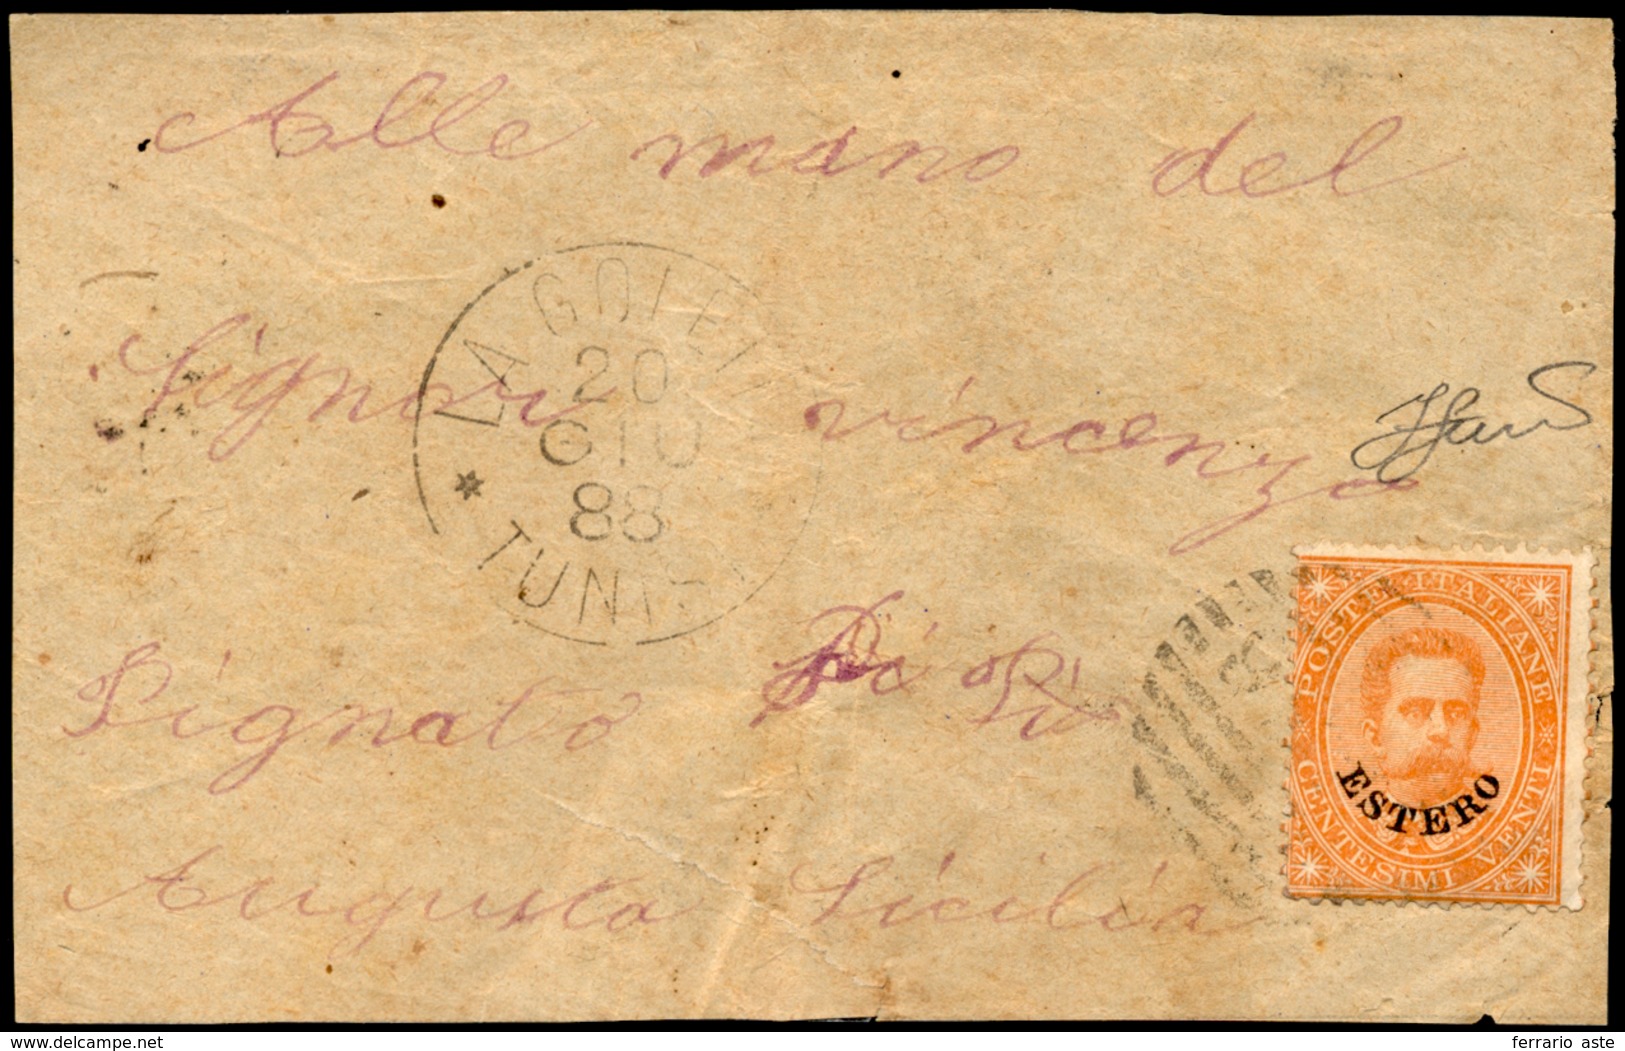 LA GOLETTA, Punti 12 - 20 Cent. (14), Perfetto, Usato Su Frontespizio Di Lettera Del 20/6/1888 Per A... - Emissions Générales